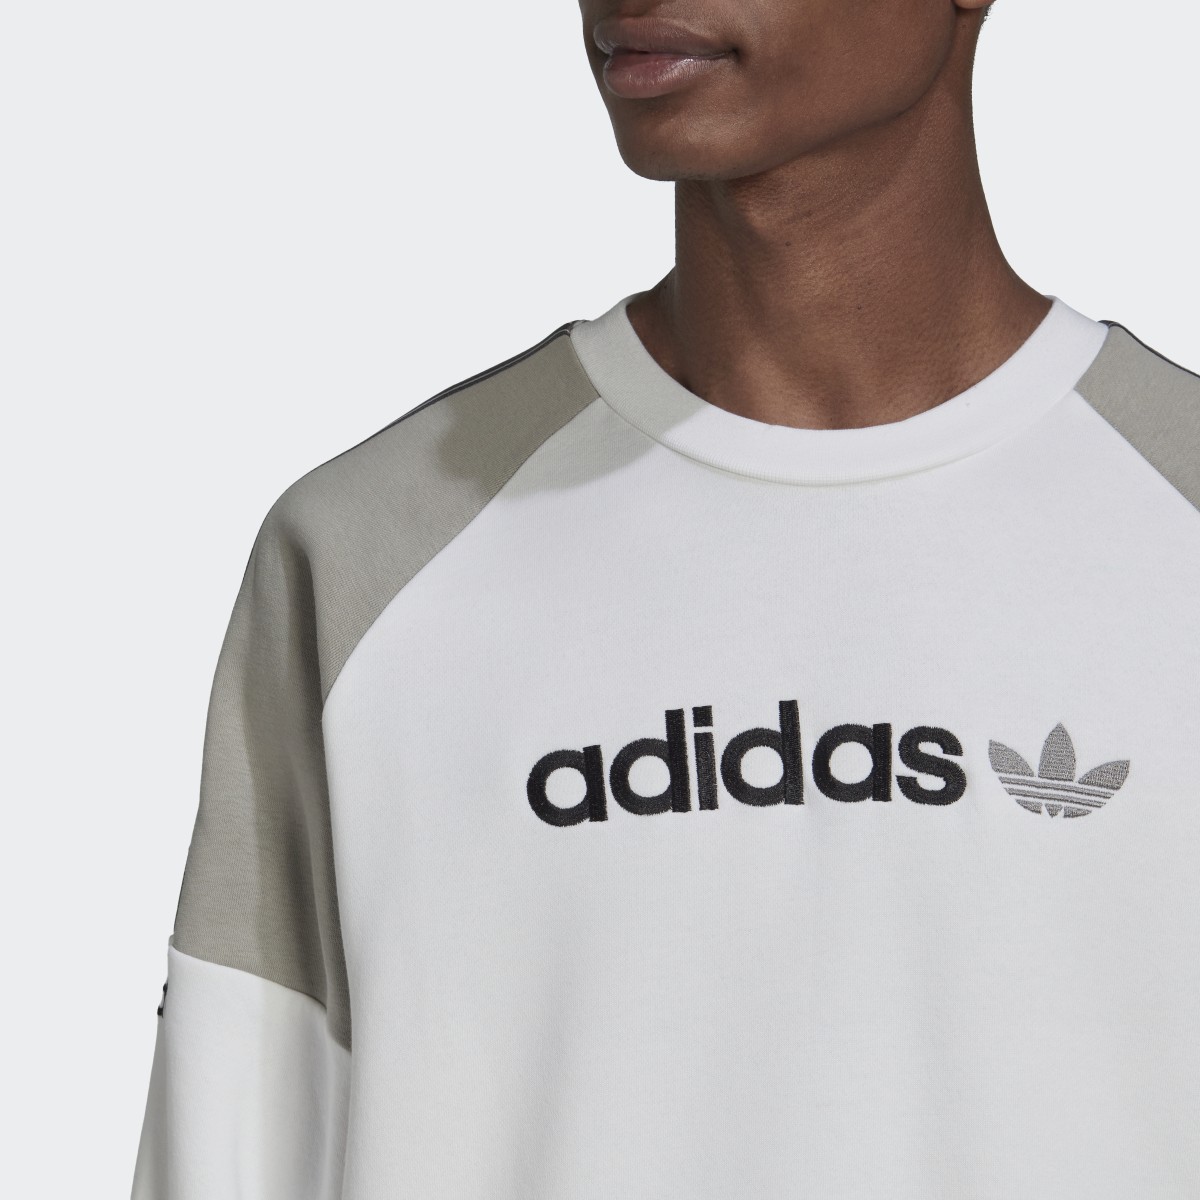 Adidas Tape Fleece Crew Sweatshirt. 6